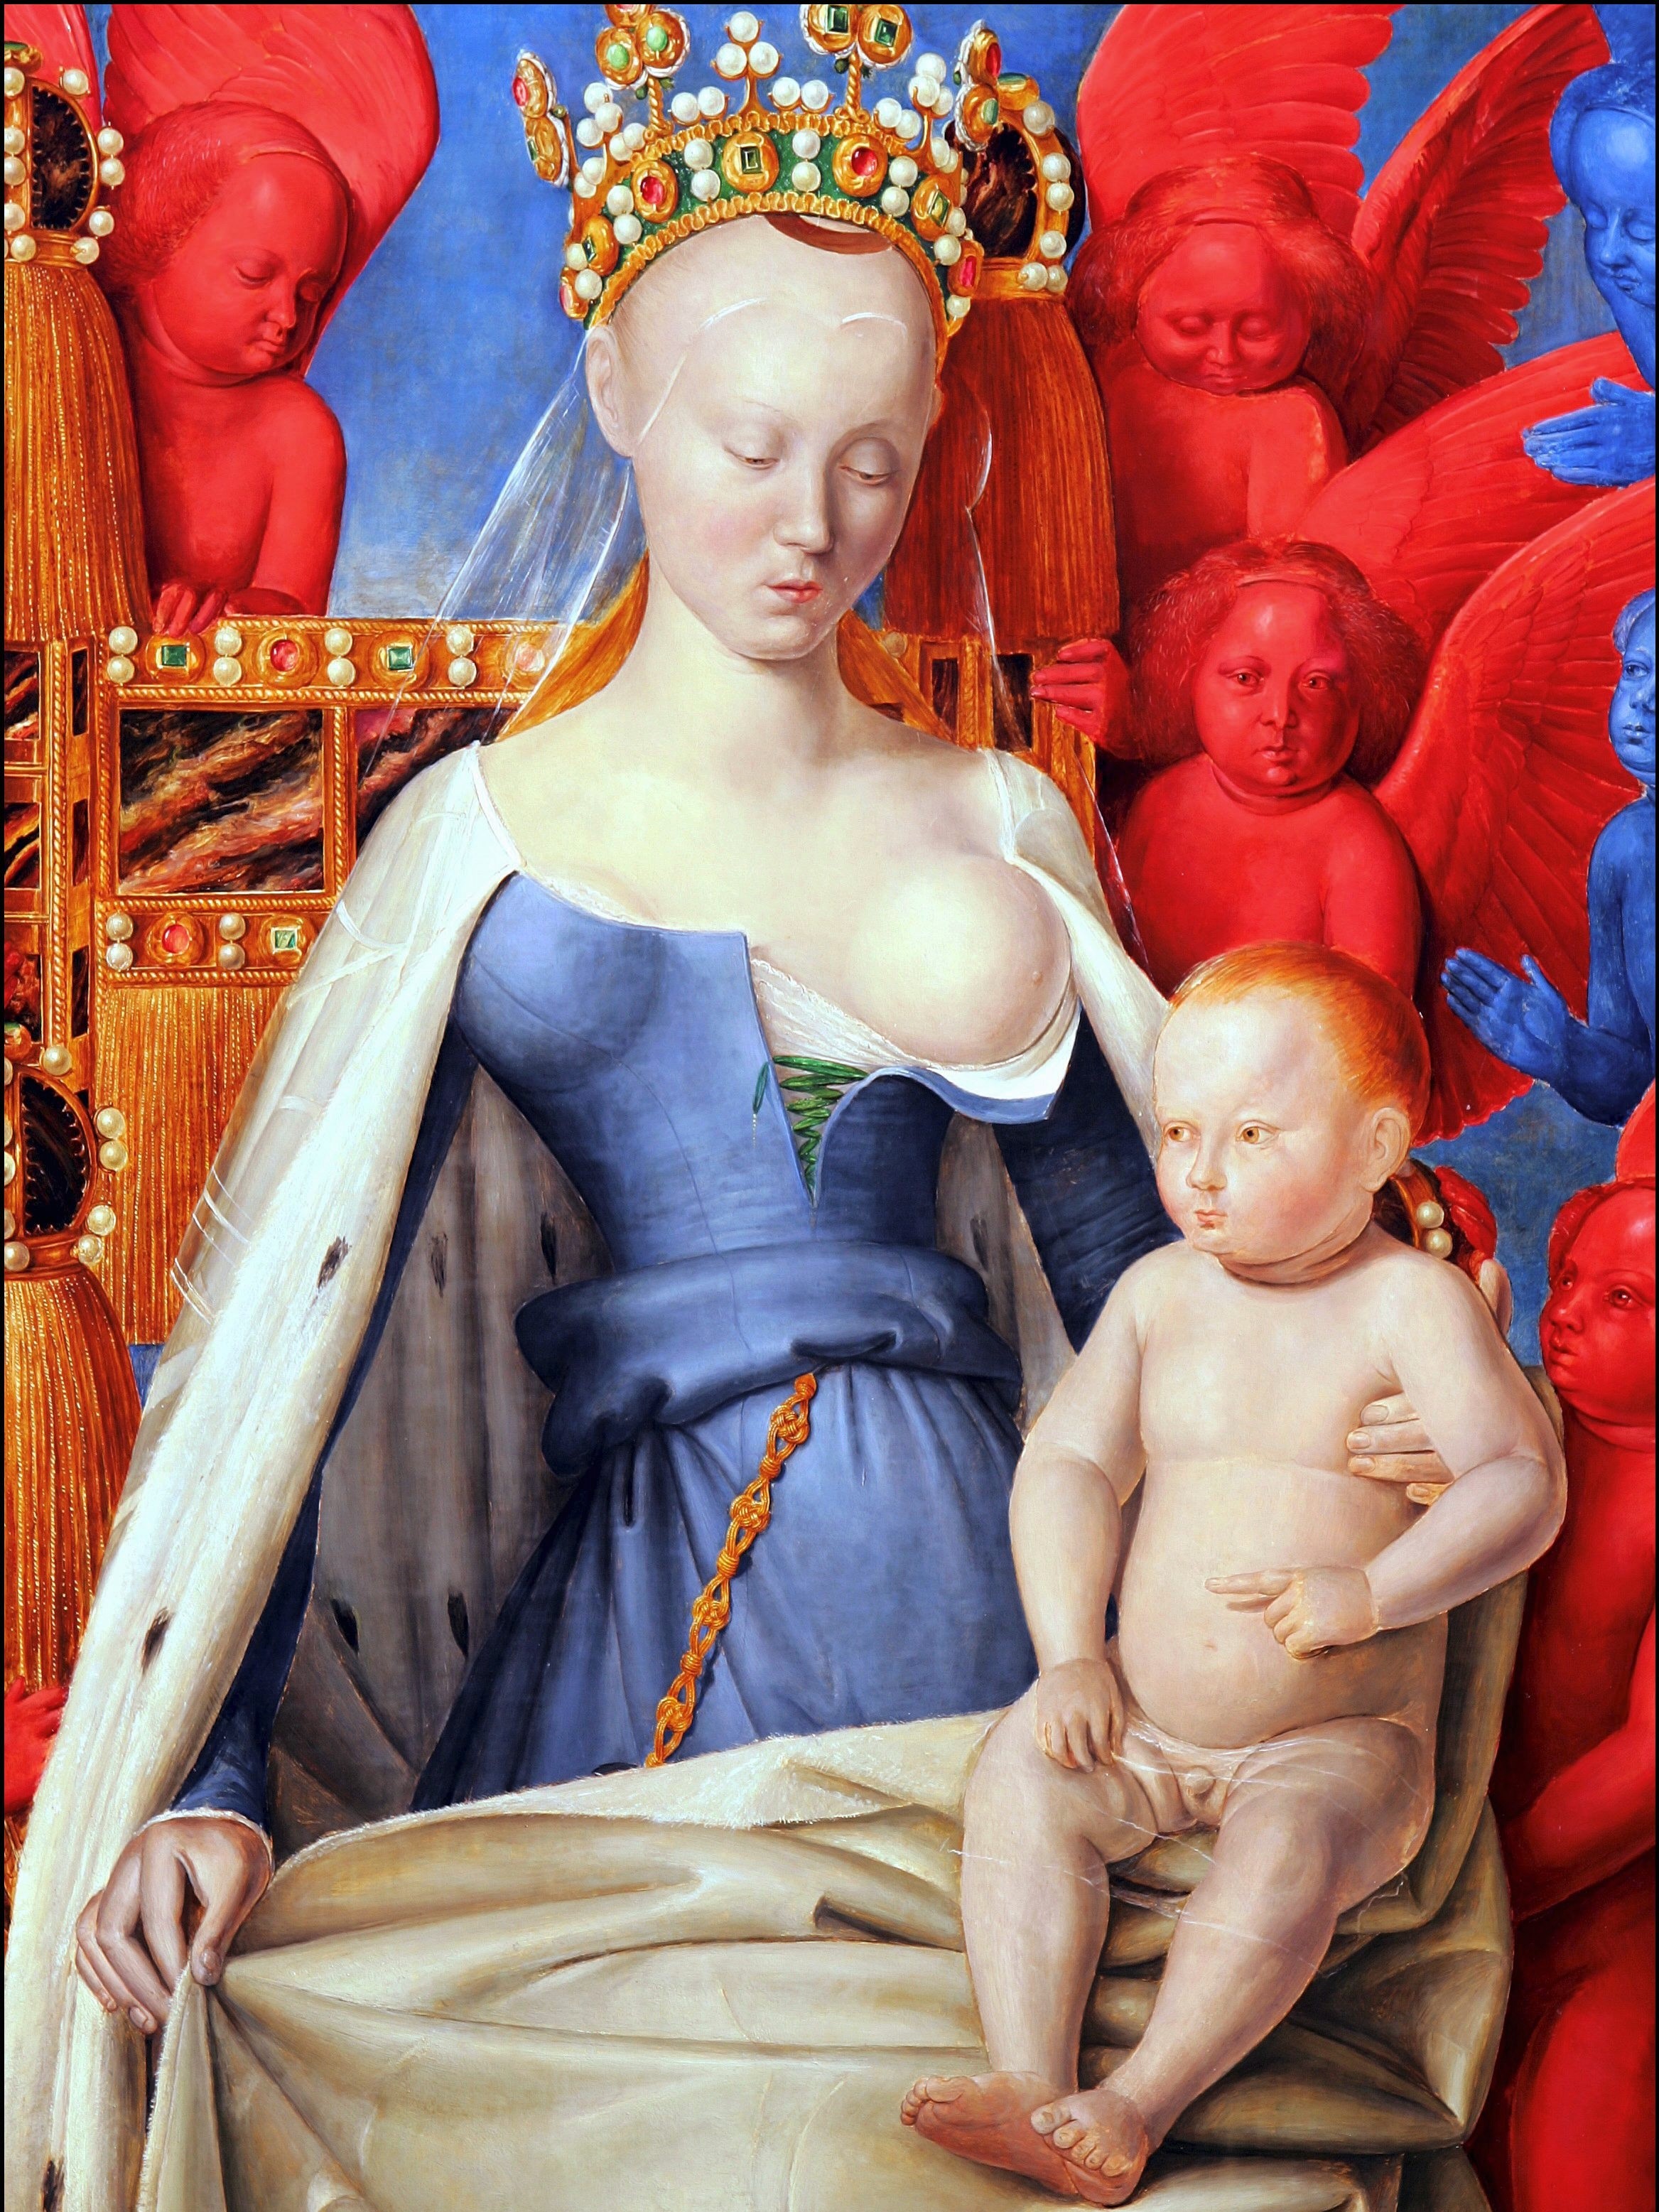 Jean Fouquet Madonna és gyermeke című festménye